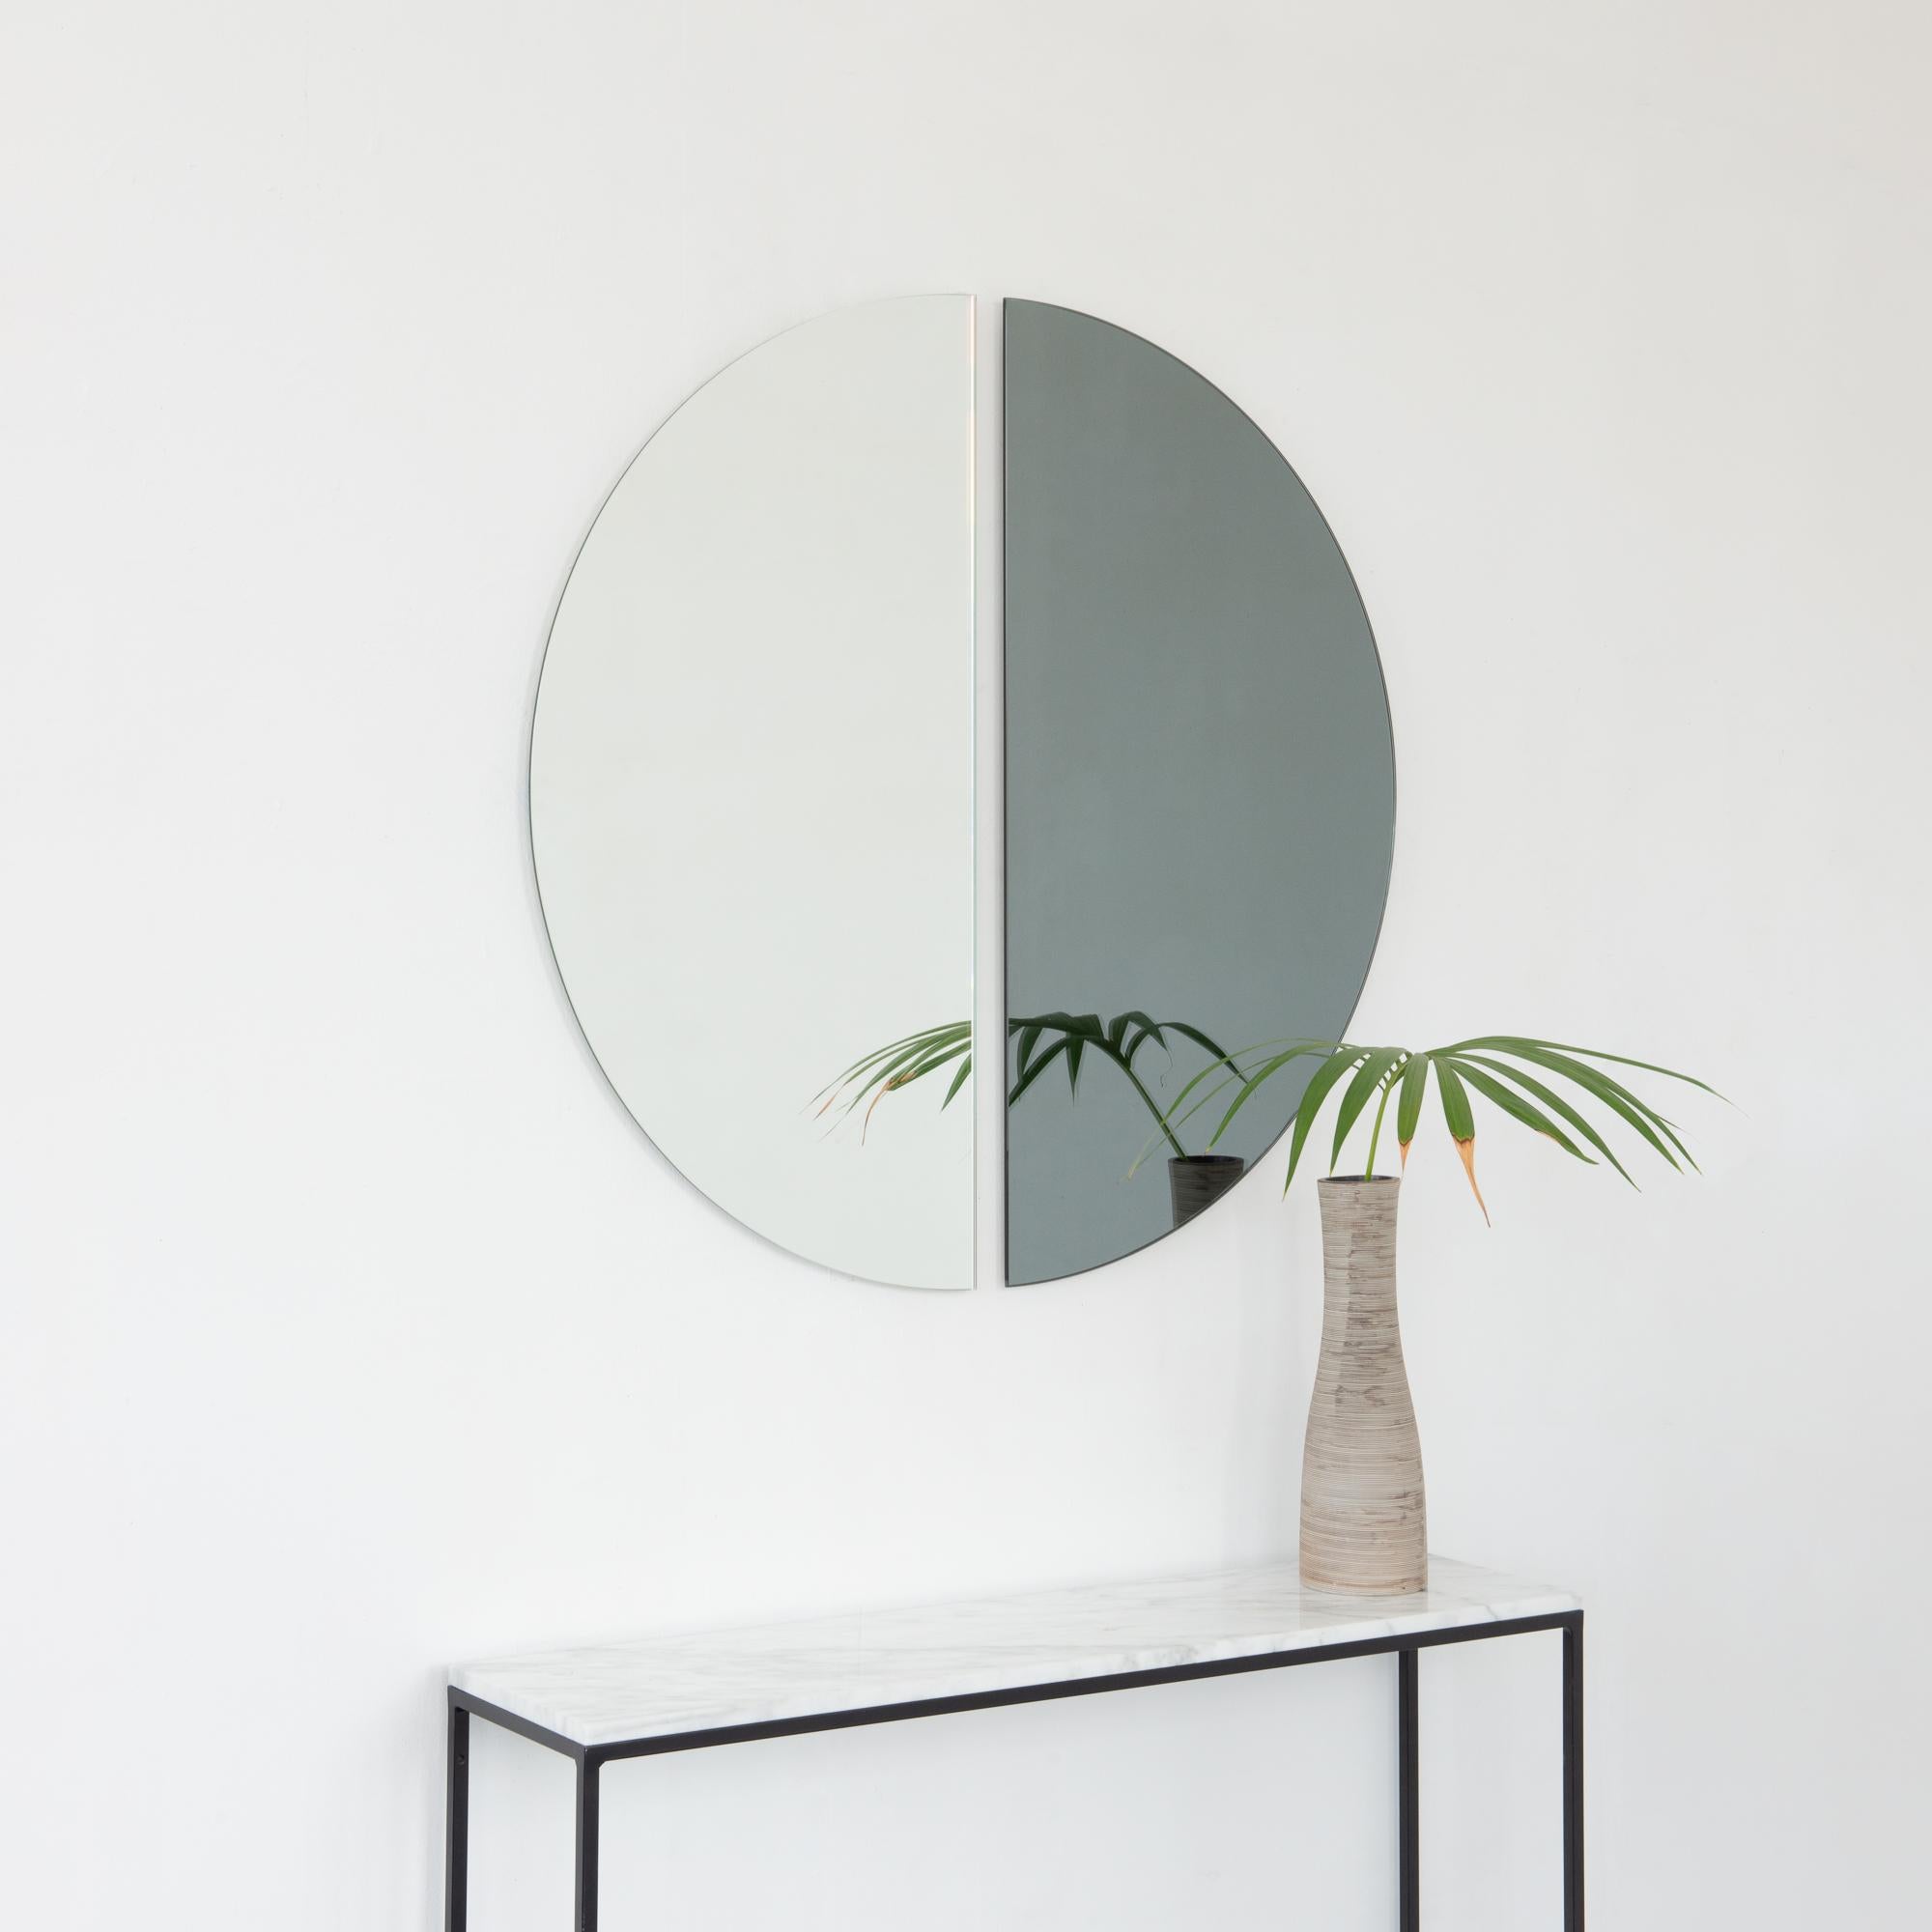 Set aus zwei minimalistischen halbmondförmigen Luna™ Standard-Spiegeln in Silber und Schwarz mit Schwebeeffekt. Ausgestattet mit einem hochwertigen und ausgeklügelten Aufhängesystem für eine flexible Installation in 4 verschiedenen Richtungen.